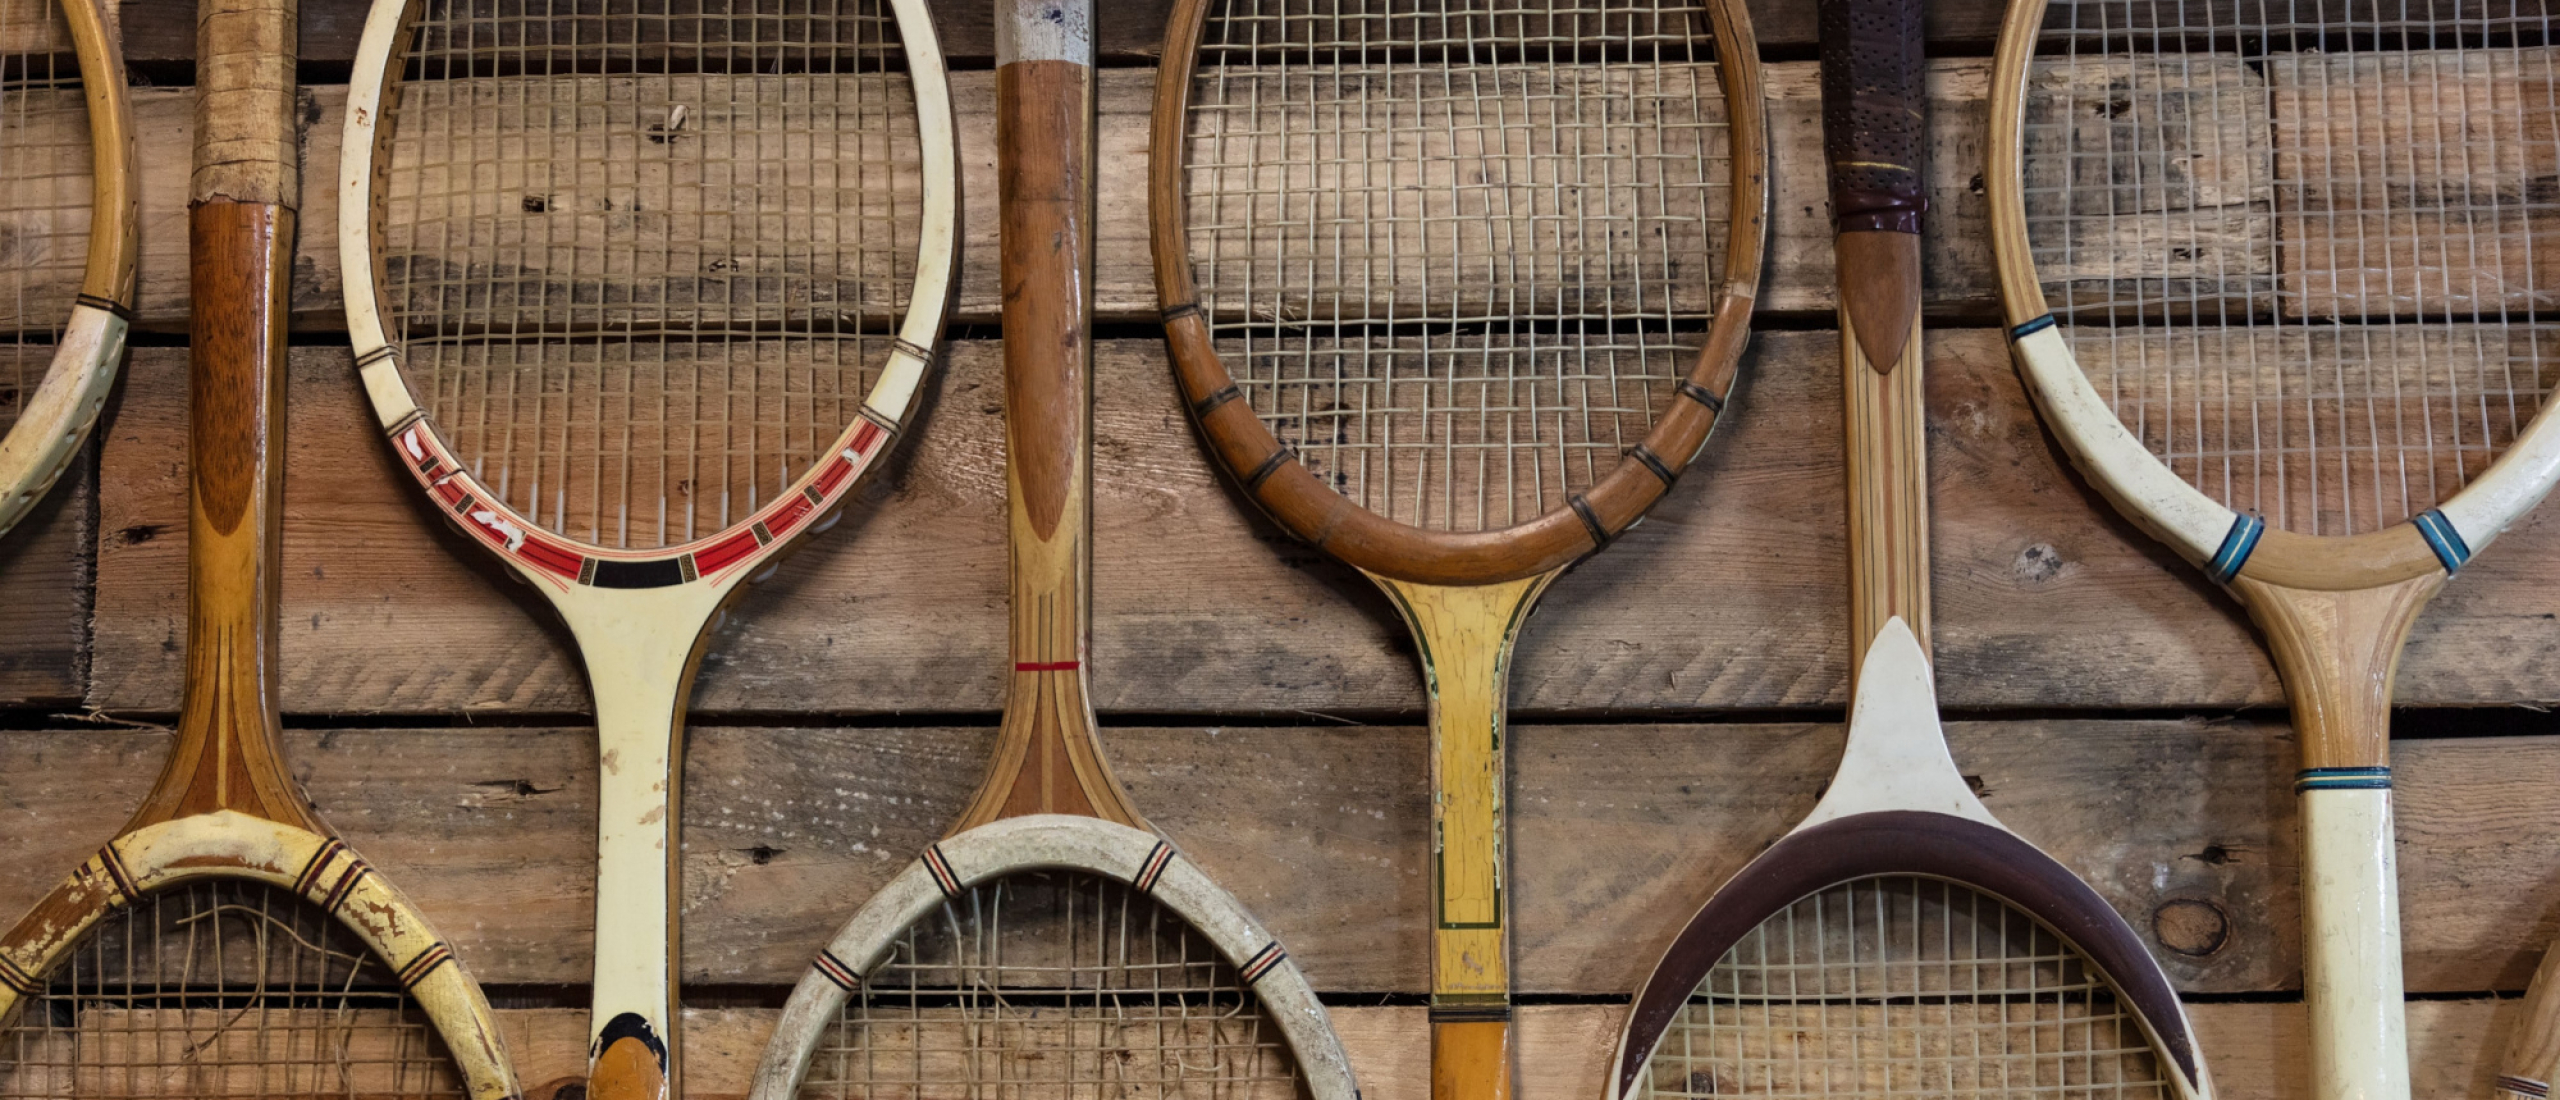 Afleiden Rusland verdediging Tennisracket kopen? | Vergelijk alle merken – Tennis-racket.nl